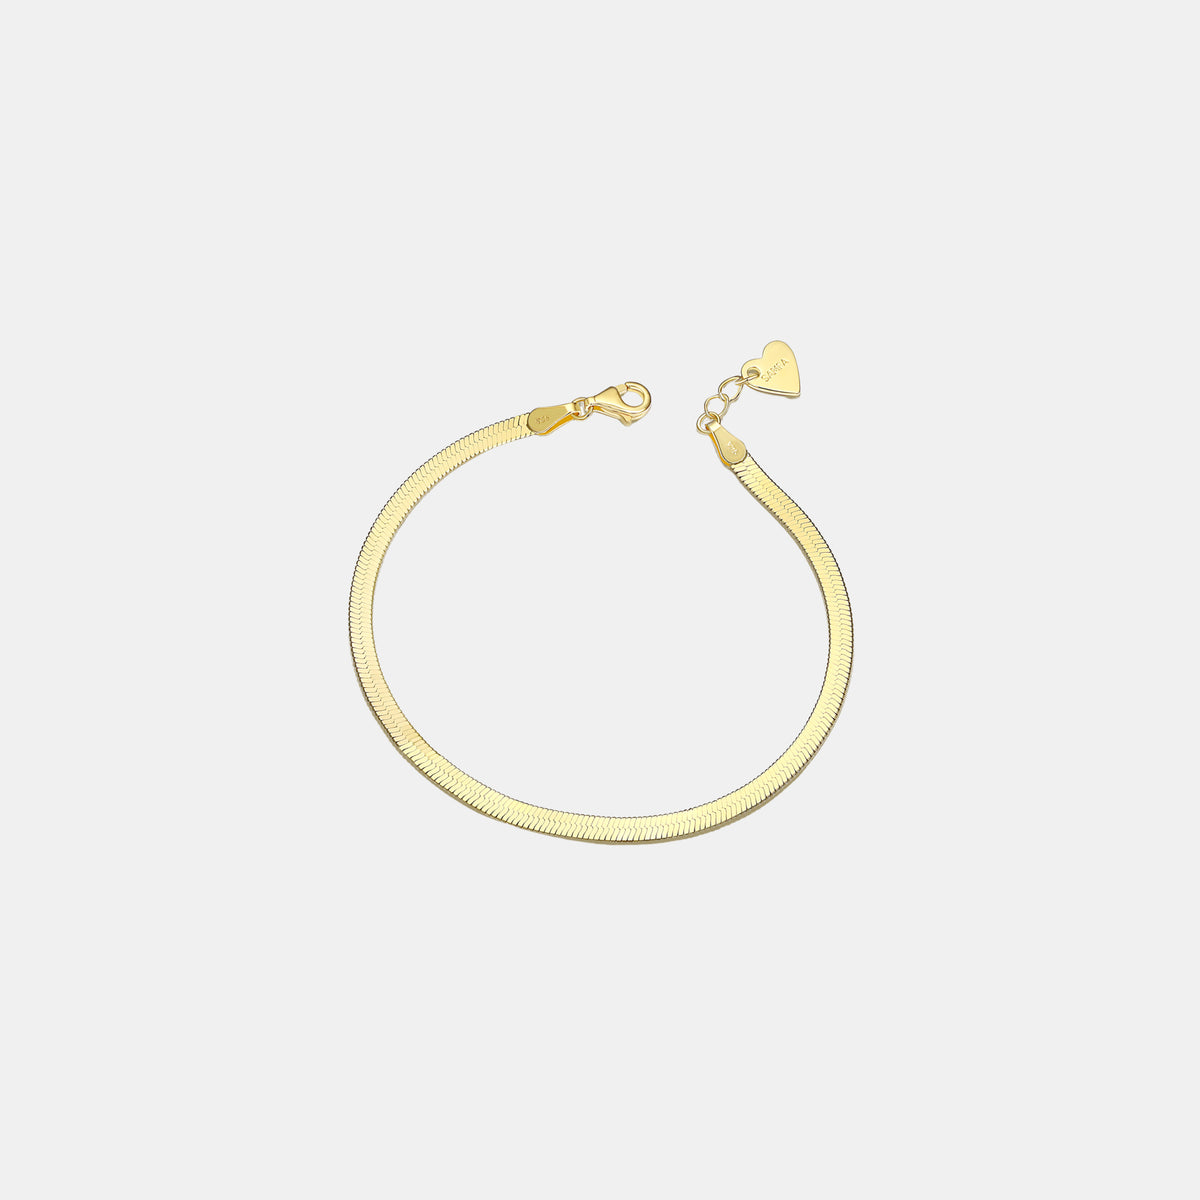 Samfa Style Herringbone Bracelet in Gold